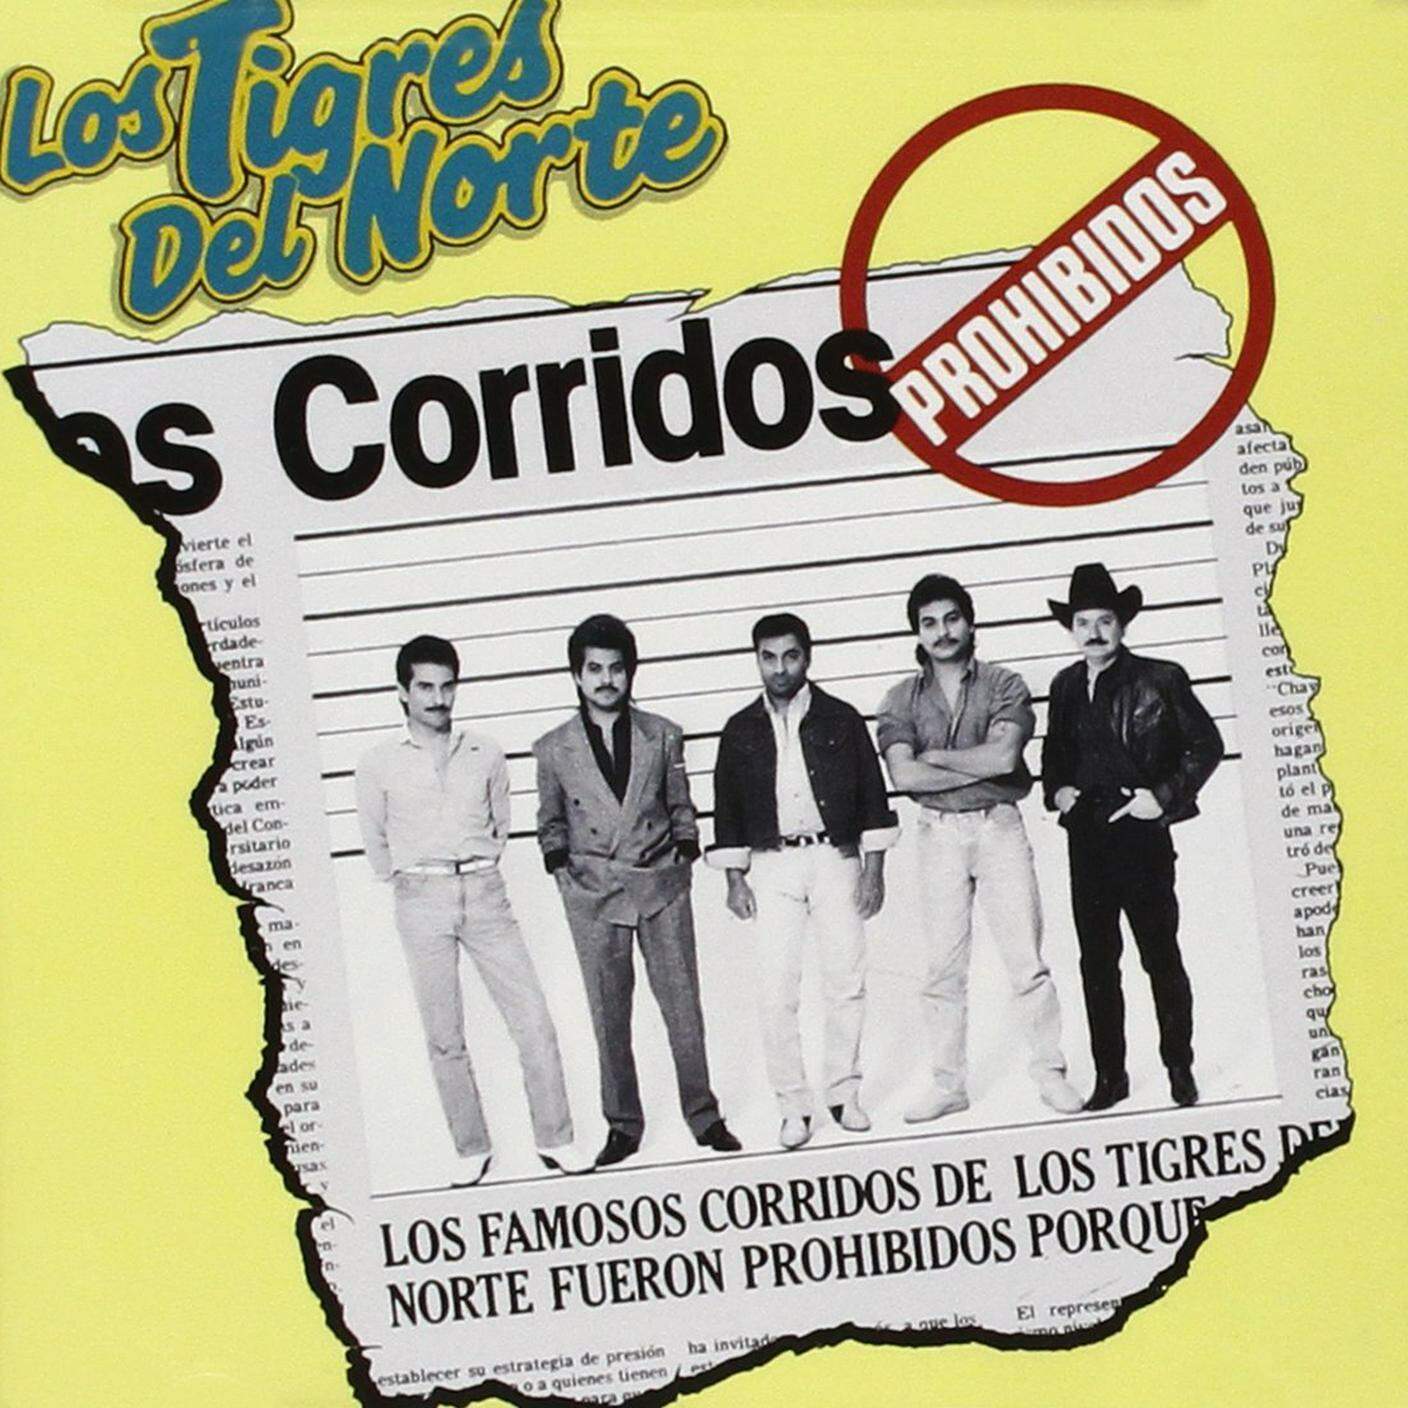 Los tigres del norte, "Corridos prohibidos", Universal Music Group (dettaglio copertina)